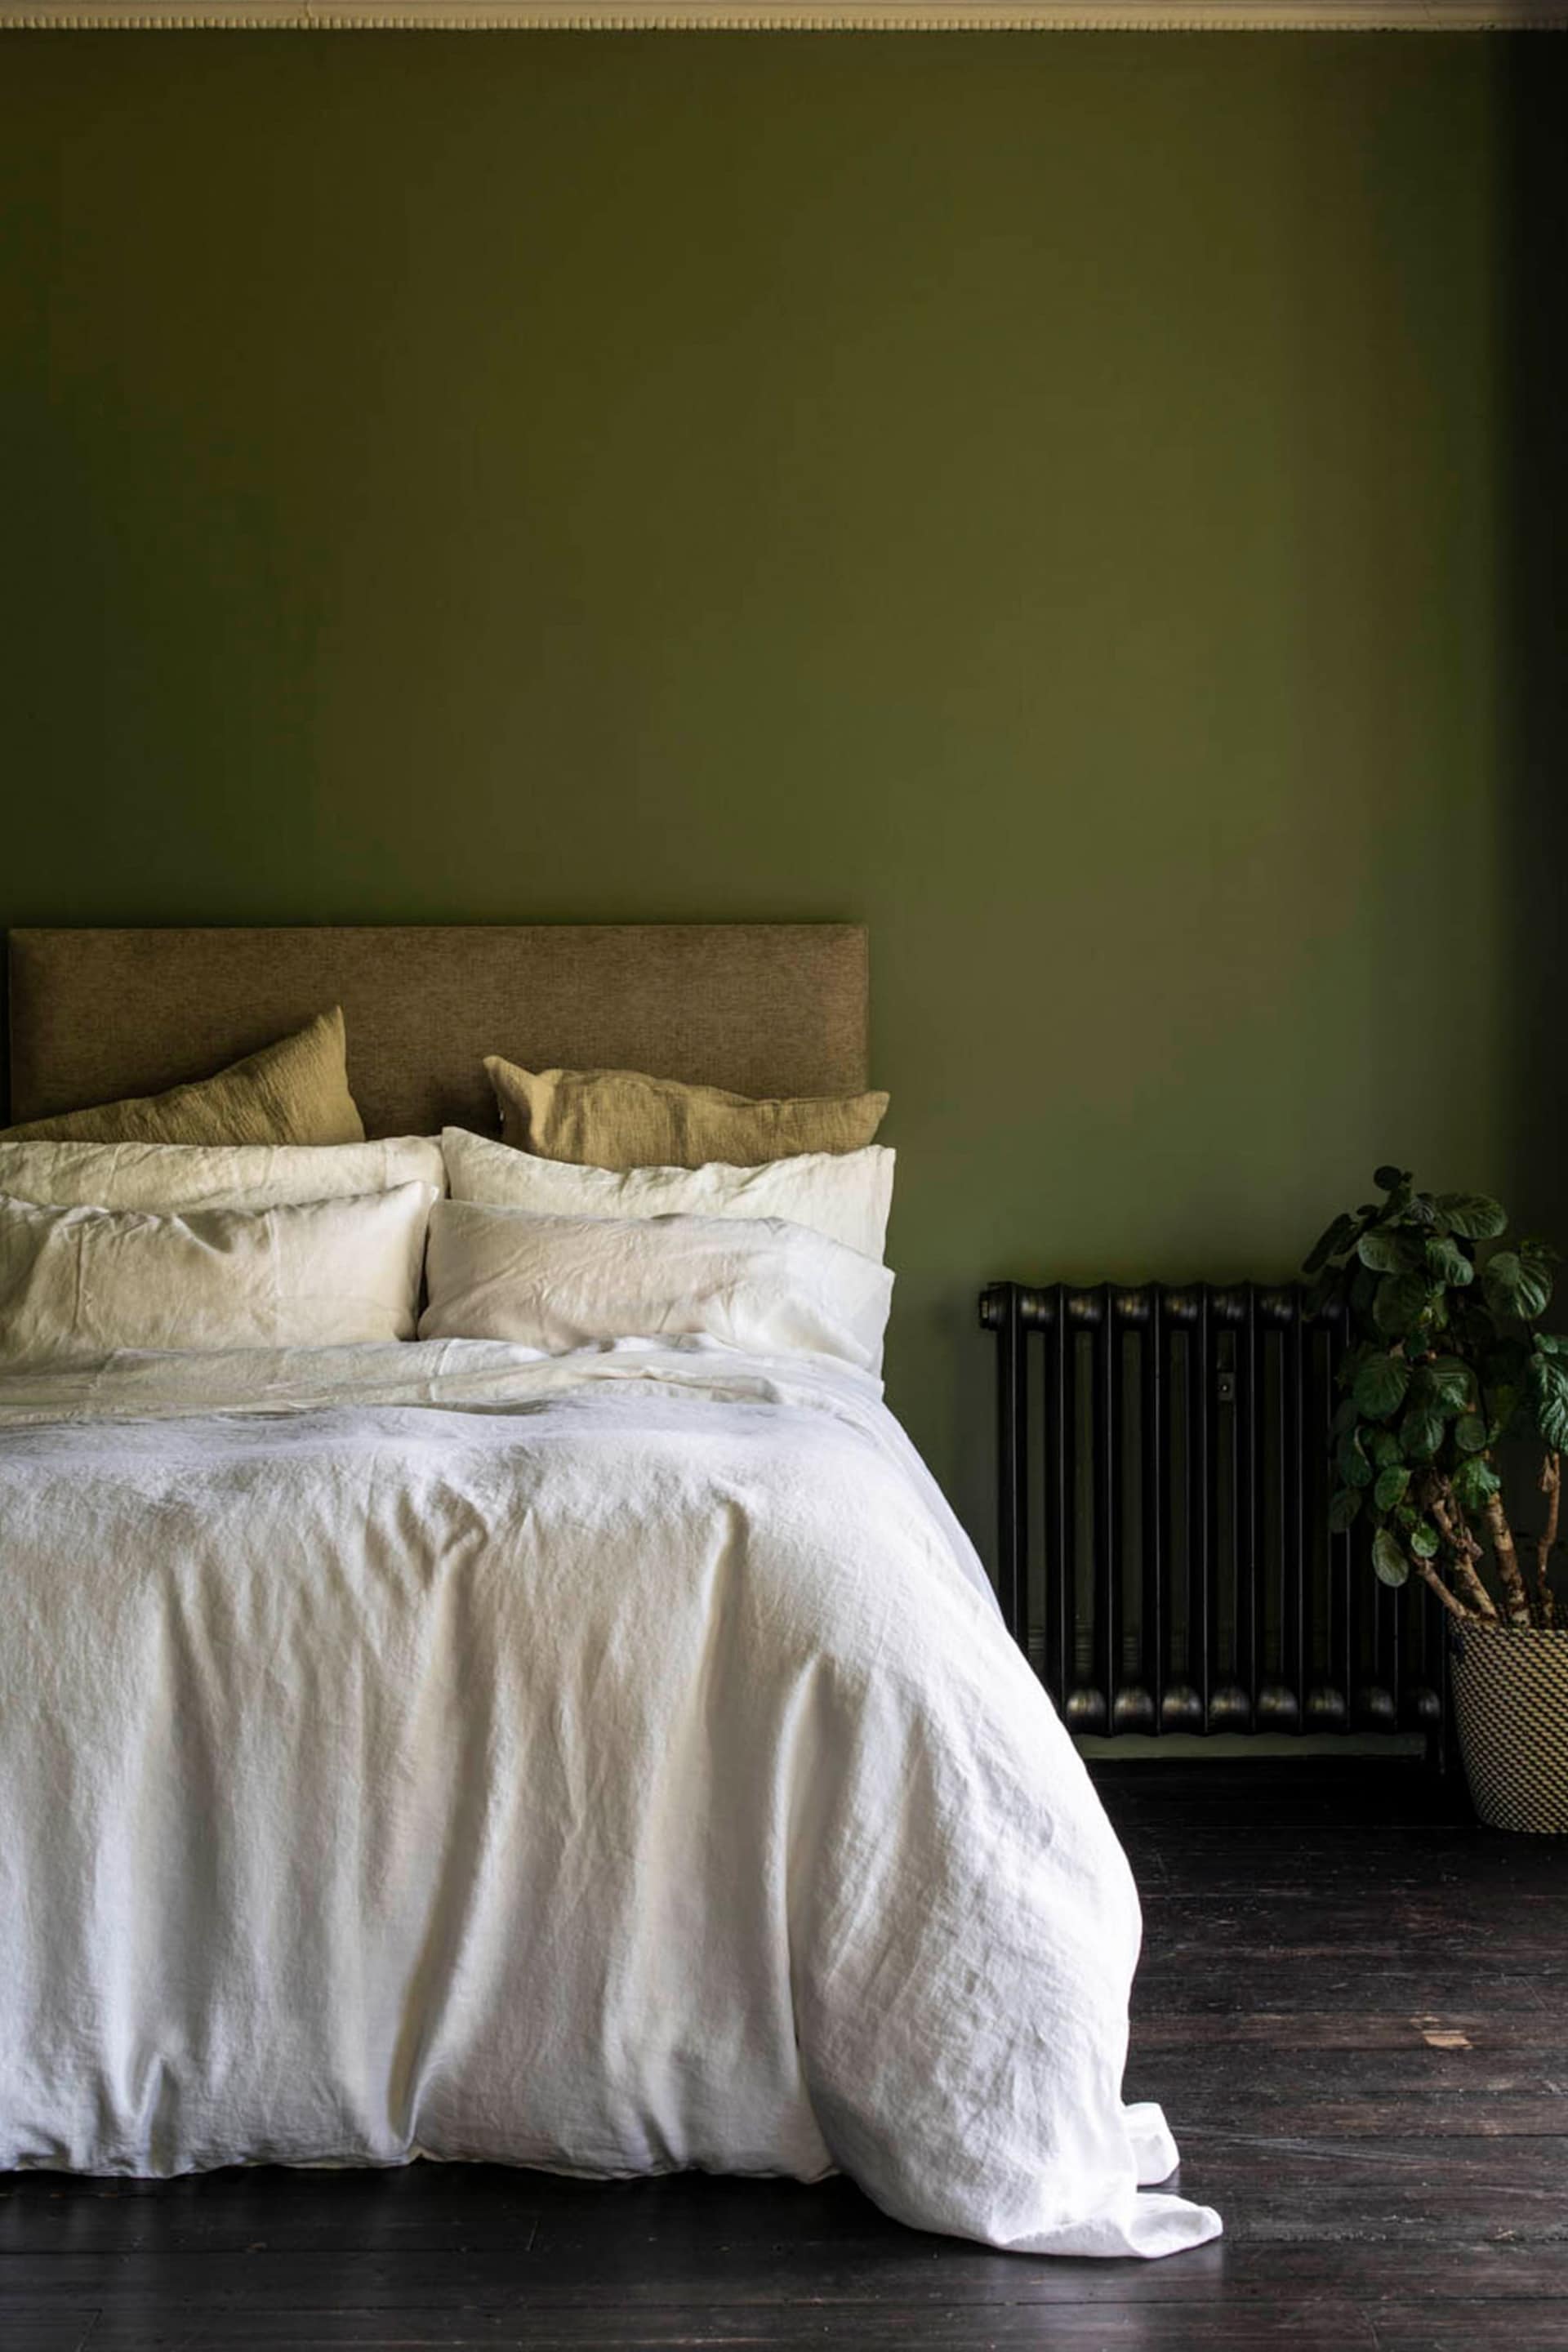 Piglet in Bed White Linen Duvet Cover - Image 1 of 4